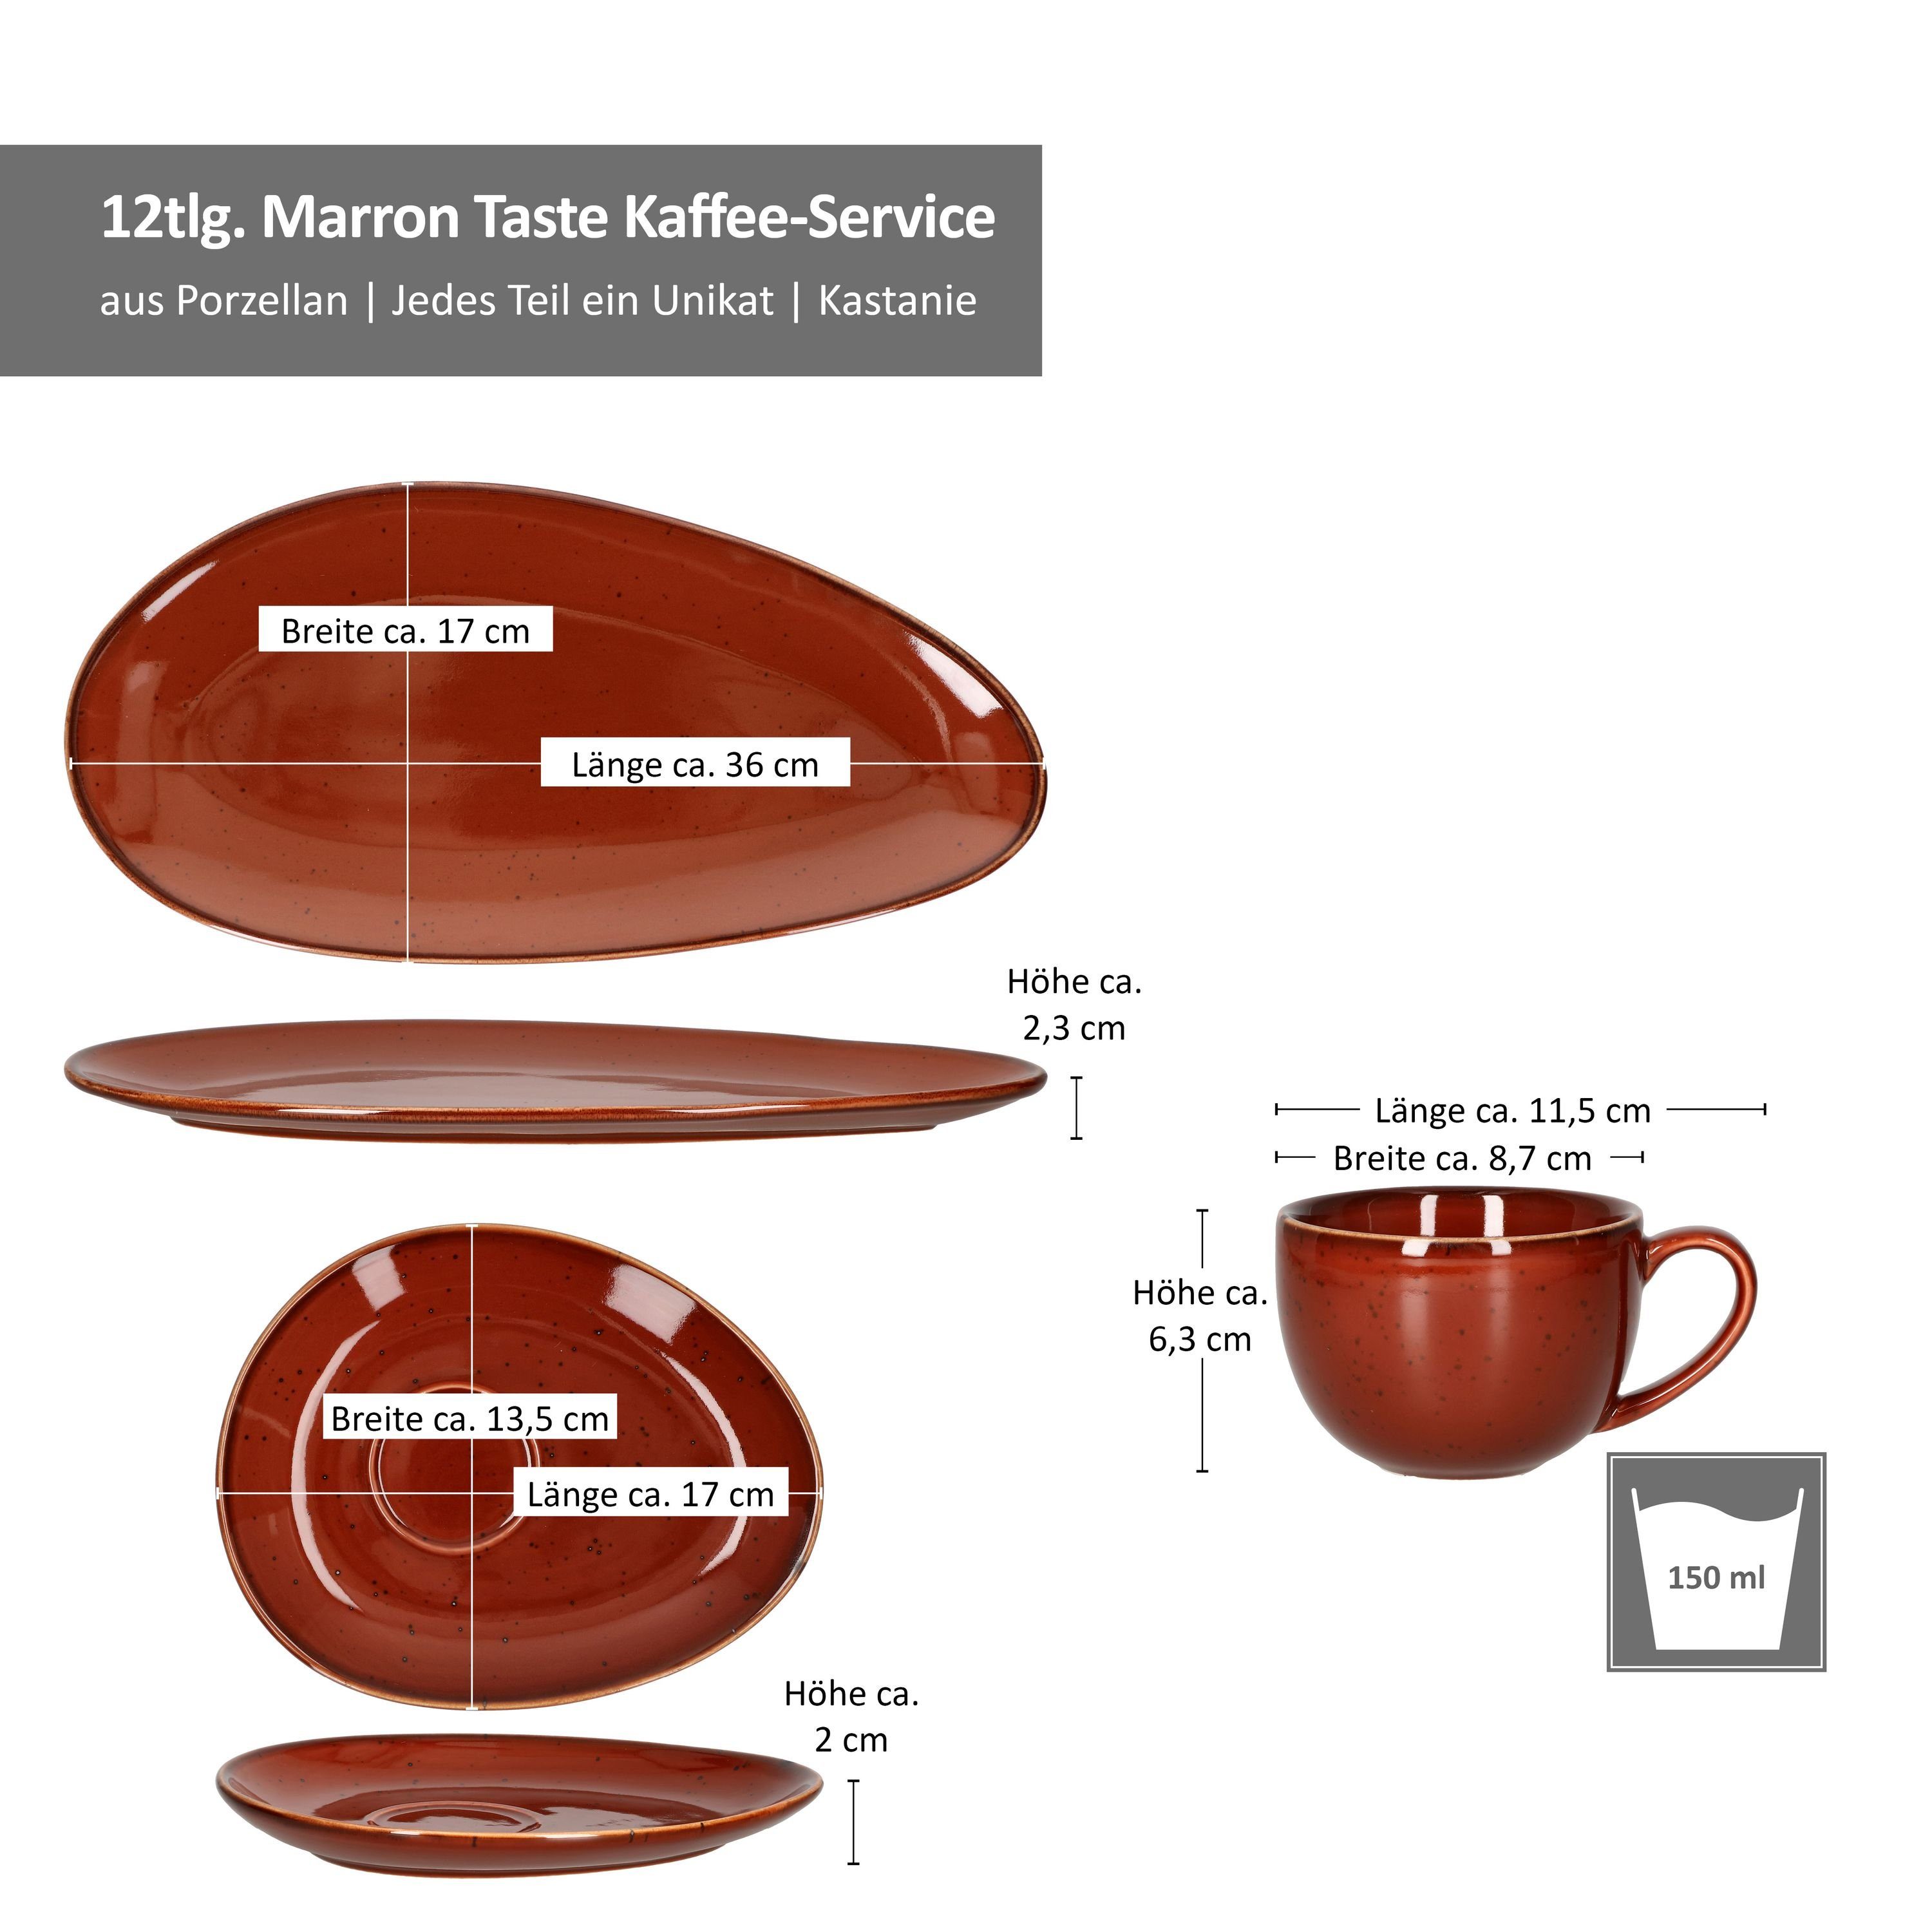 MamboCat Kaffeeservice 12tlg. Kaffee-Service Marron 211573 211498 Taste - + 211481